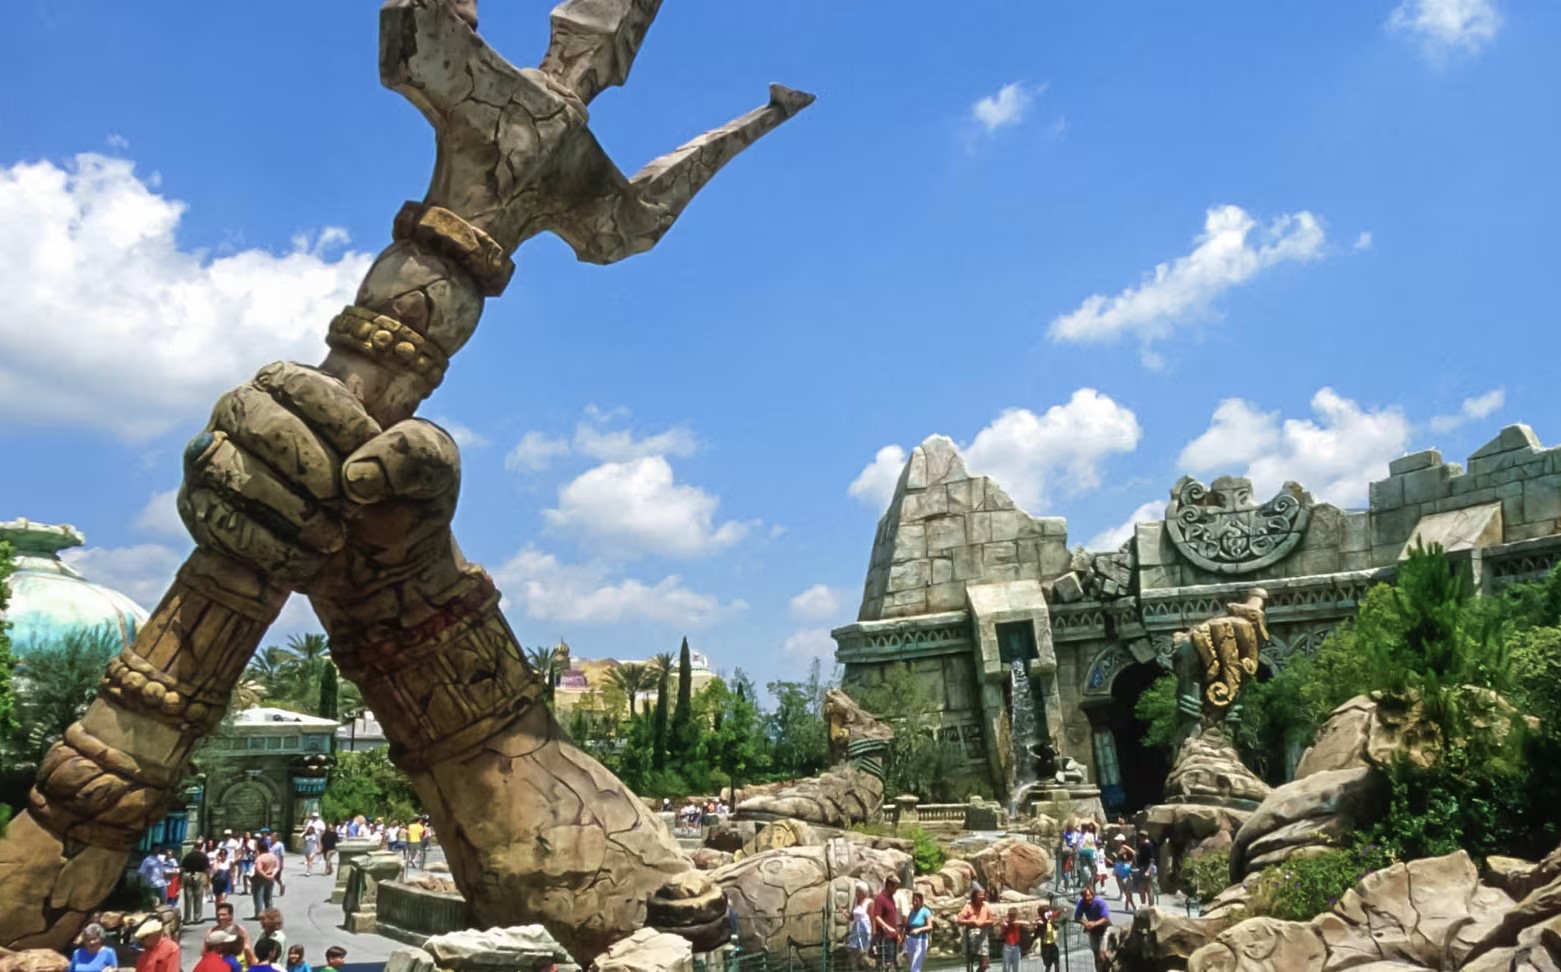 “Poseidon’s Fury” tem dias contados no “Universal Orlando”: fechará em maio